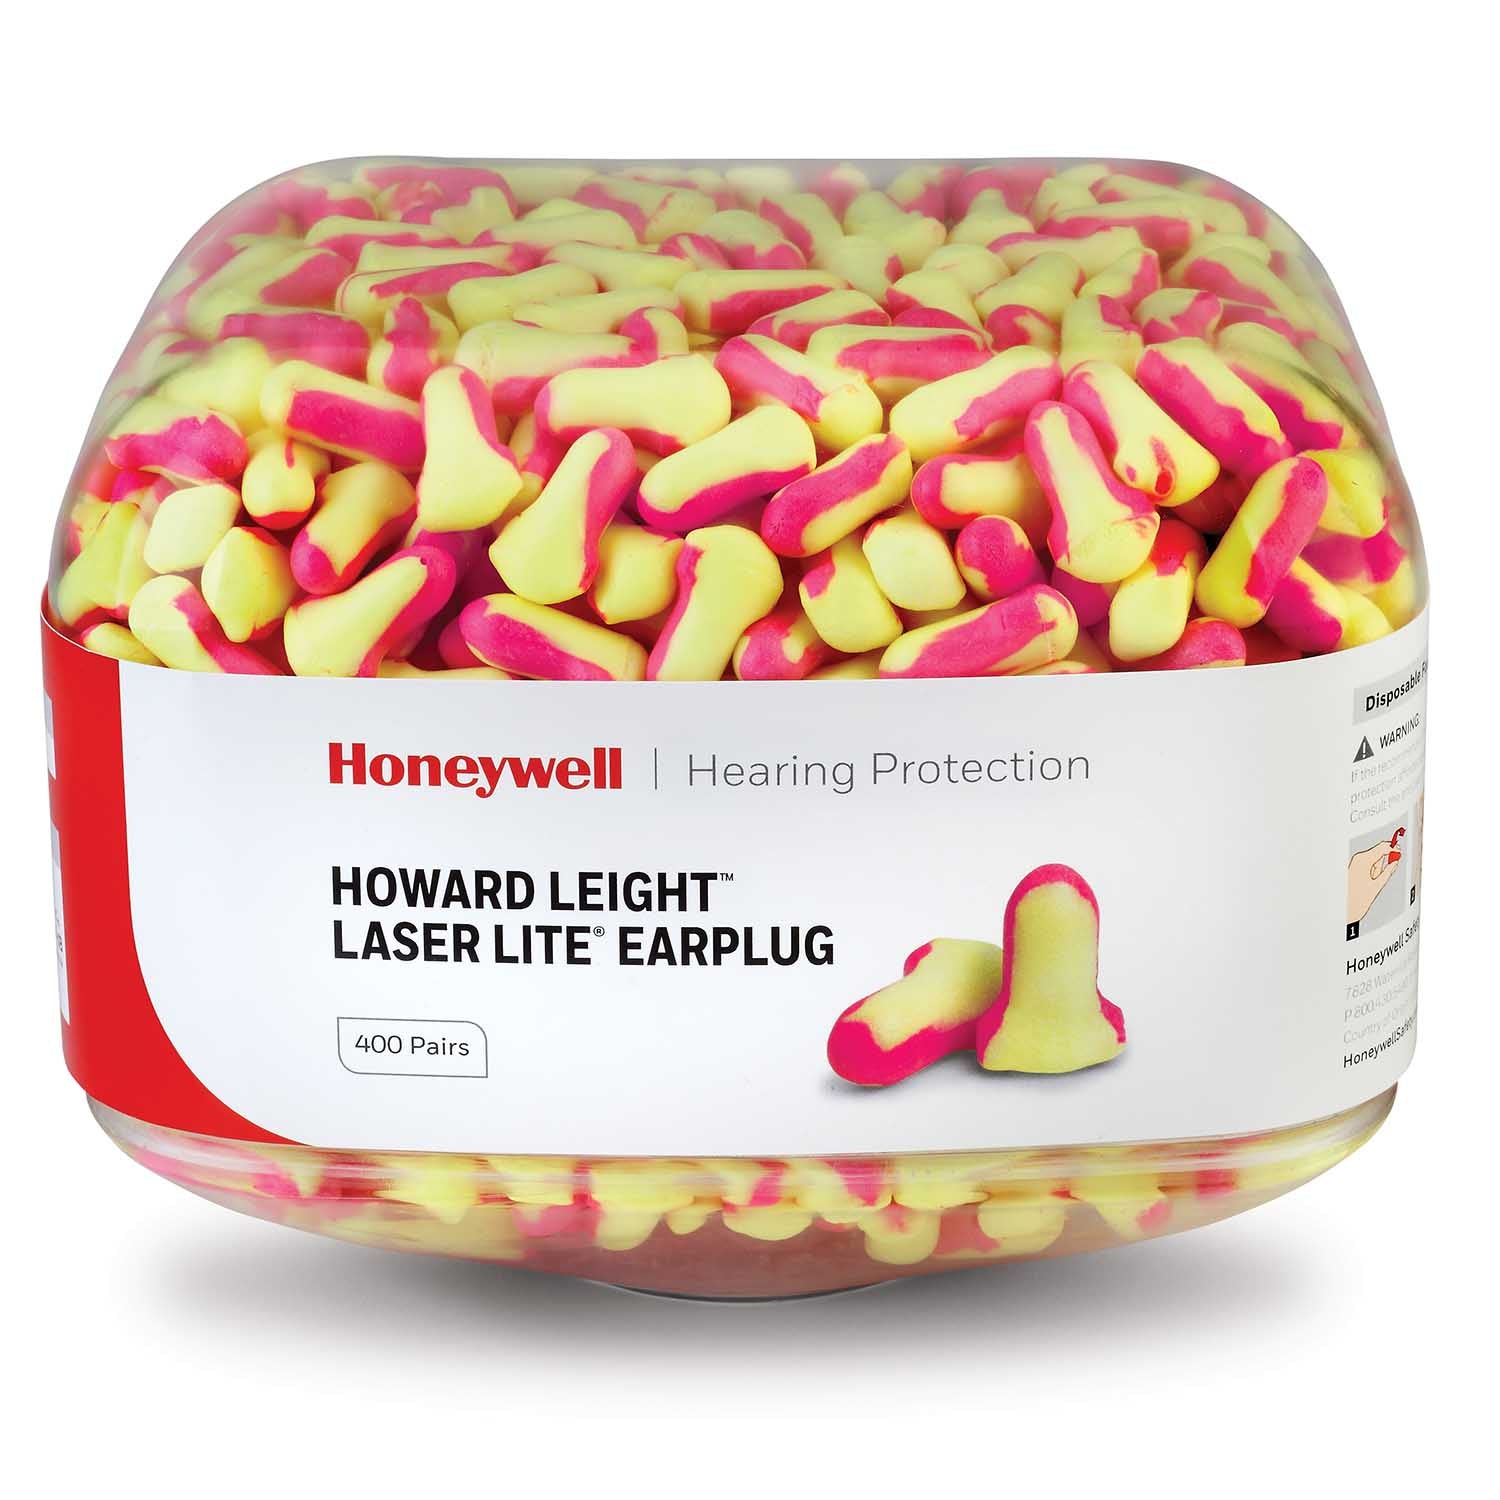 Honeywell Howard Leight Laser Lite Earplug Refill Canister for HL400 Dispenser 400 pairs